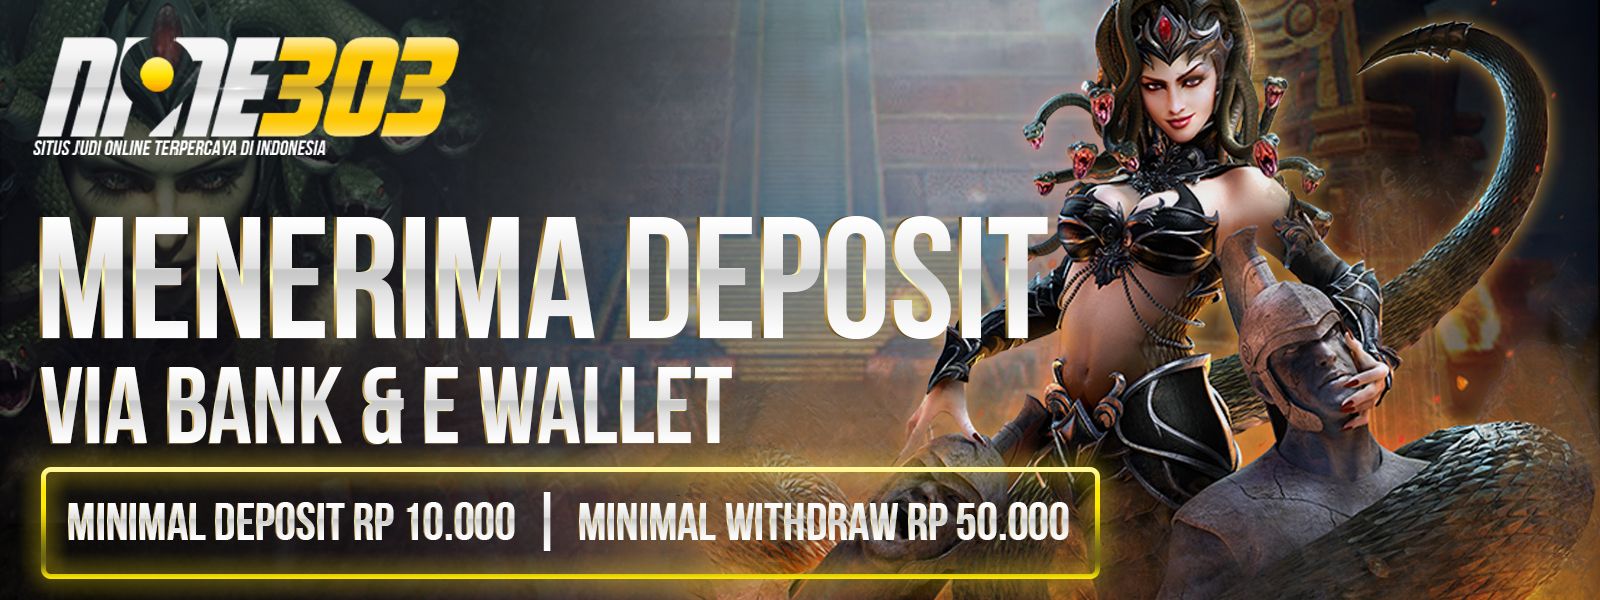 Minimal Deposit